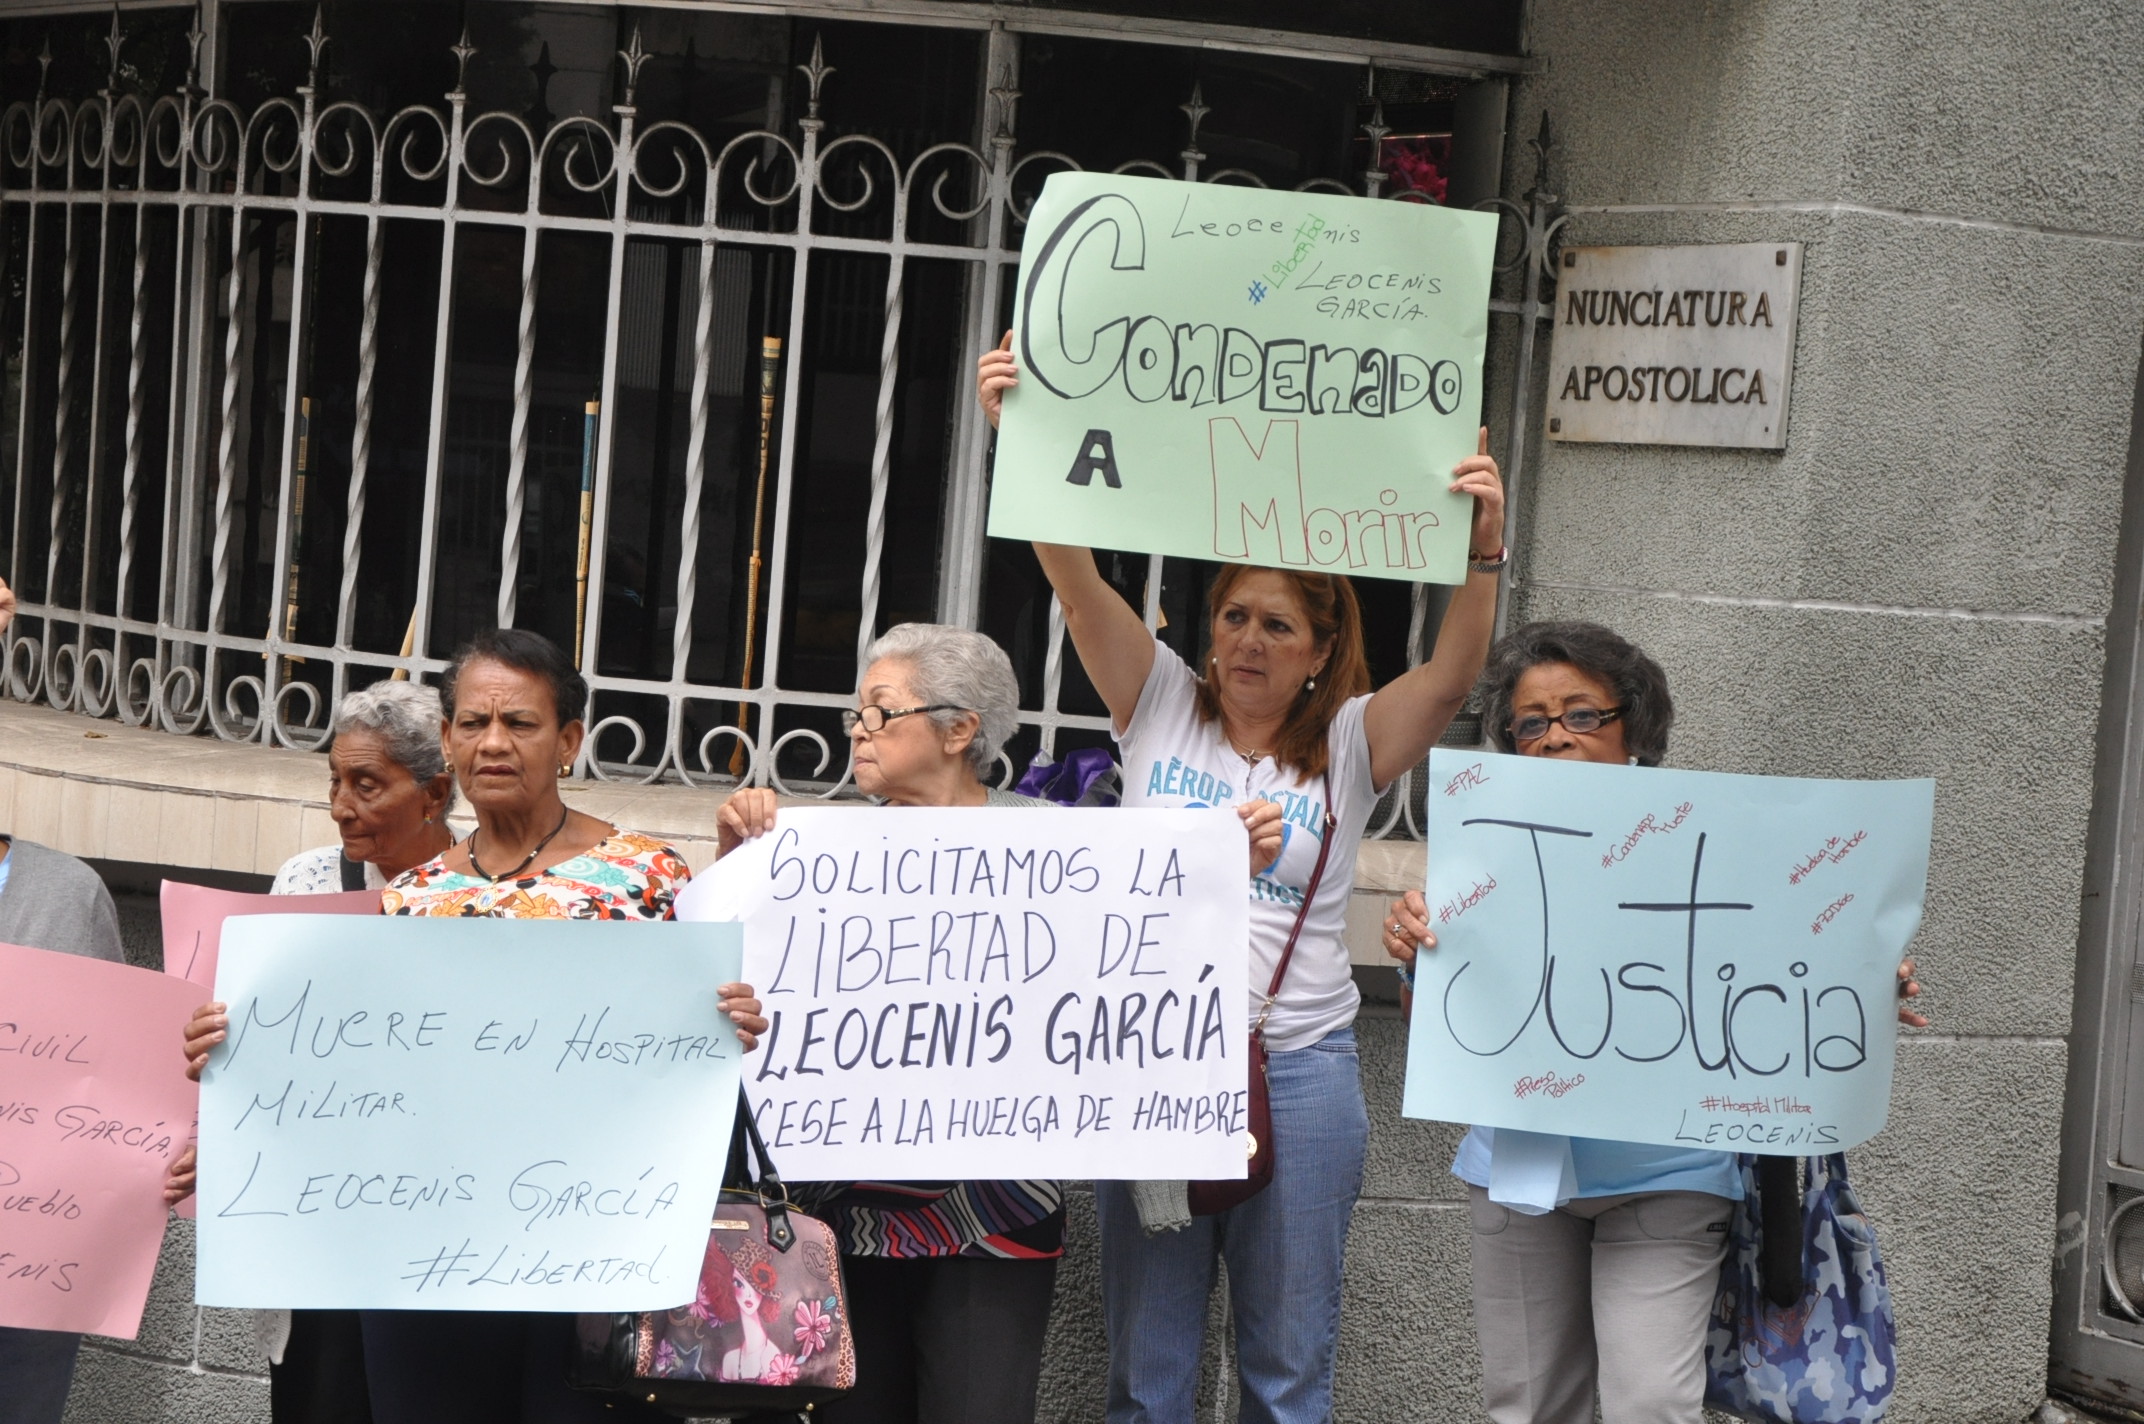 Amigos y familiares de Leocenis García solicitan al papa Francisco que interceda en su caso